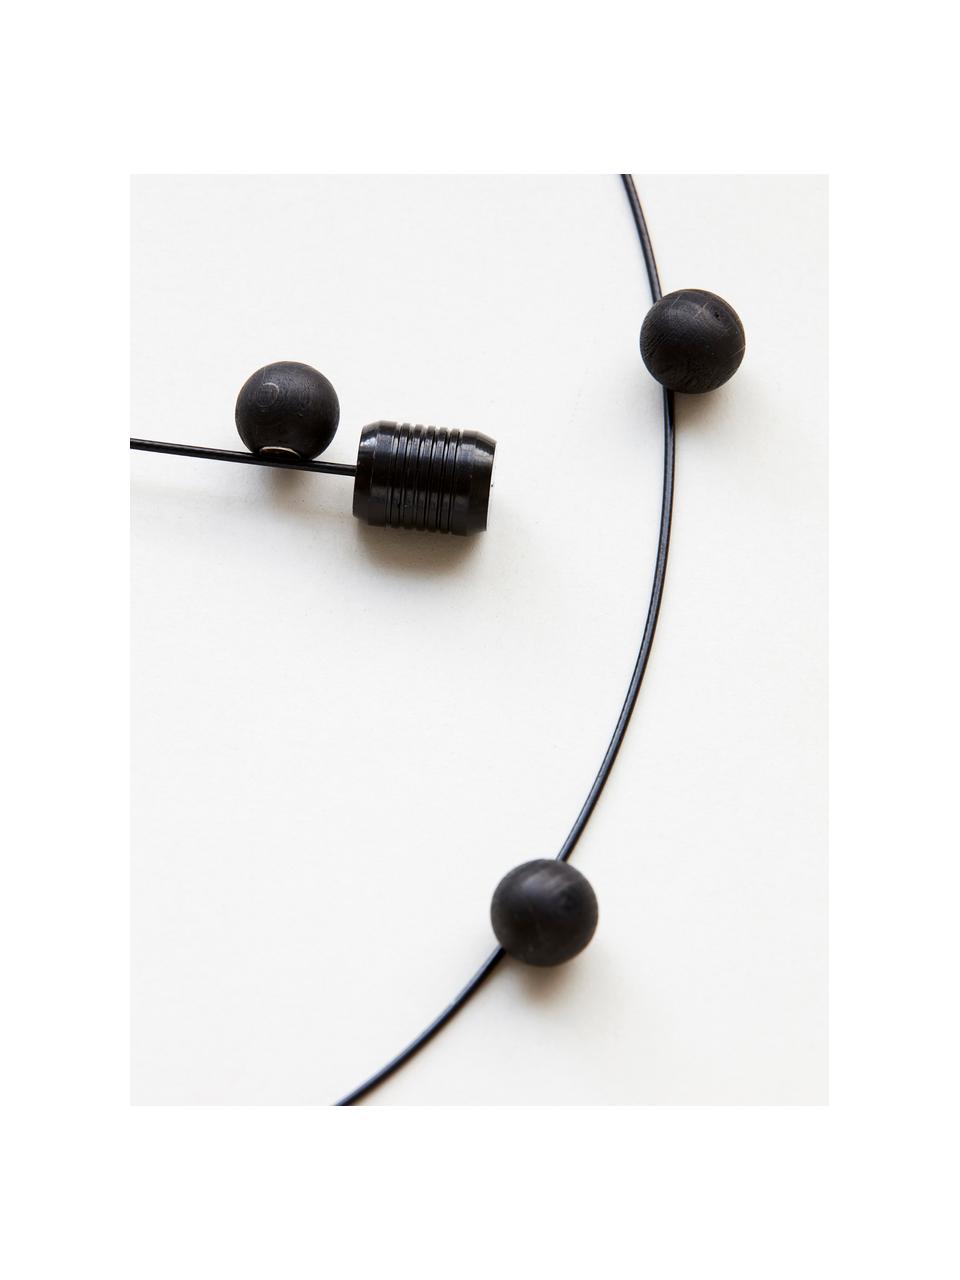 Fotodisplay Cable in zwart, Metaal, magneten, hout, Zwart, L 150 cm